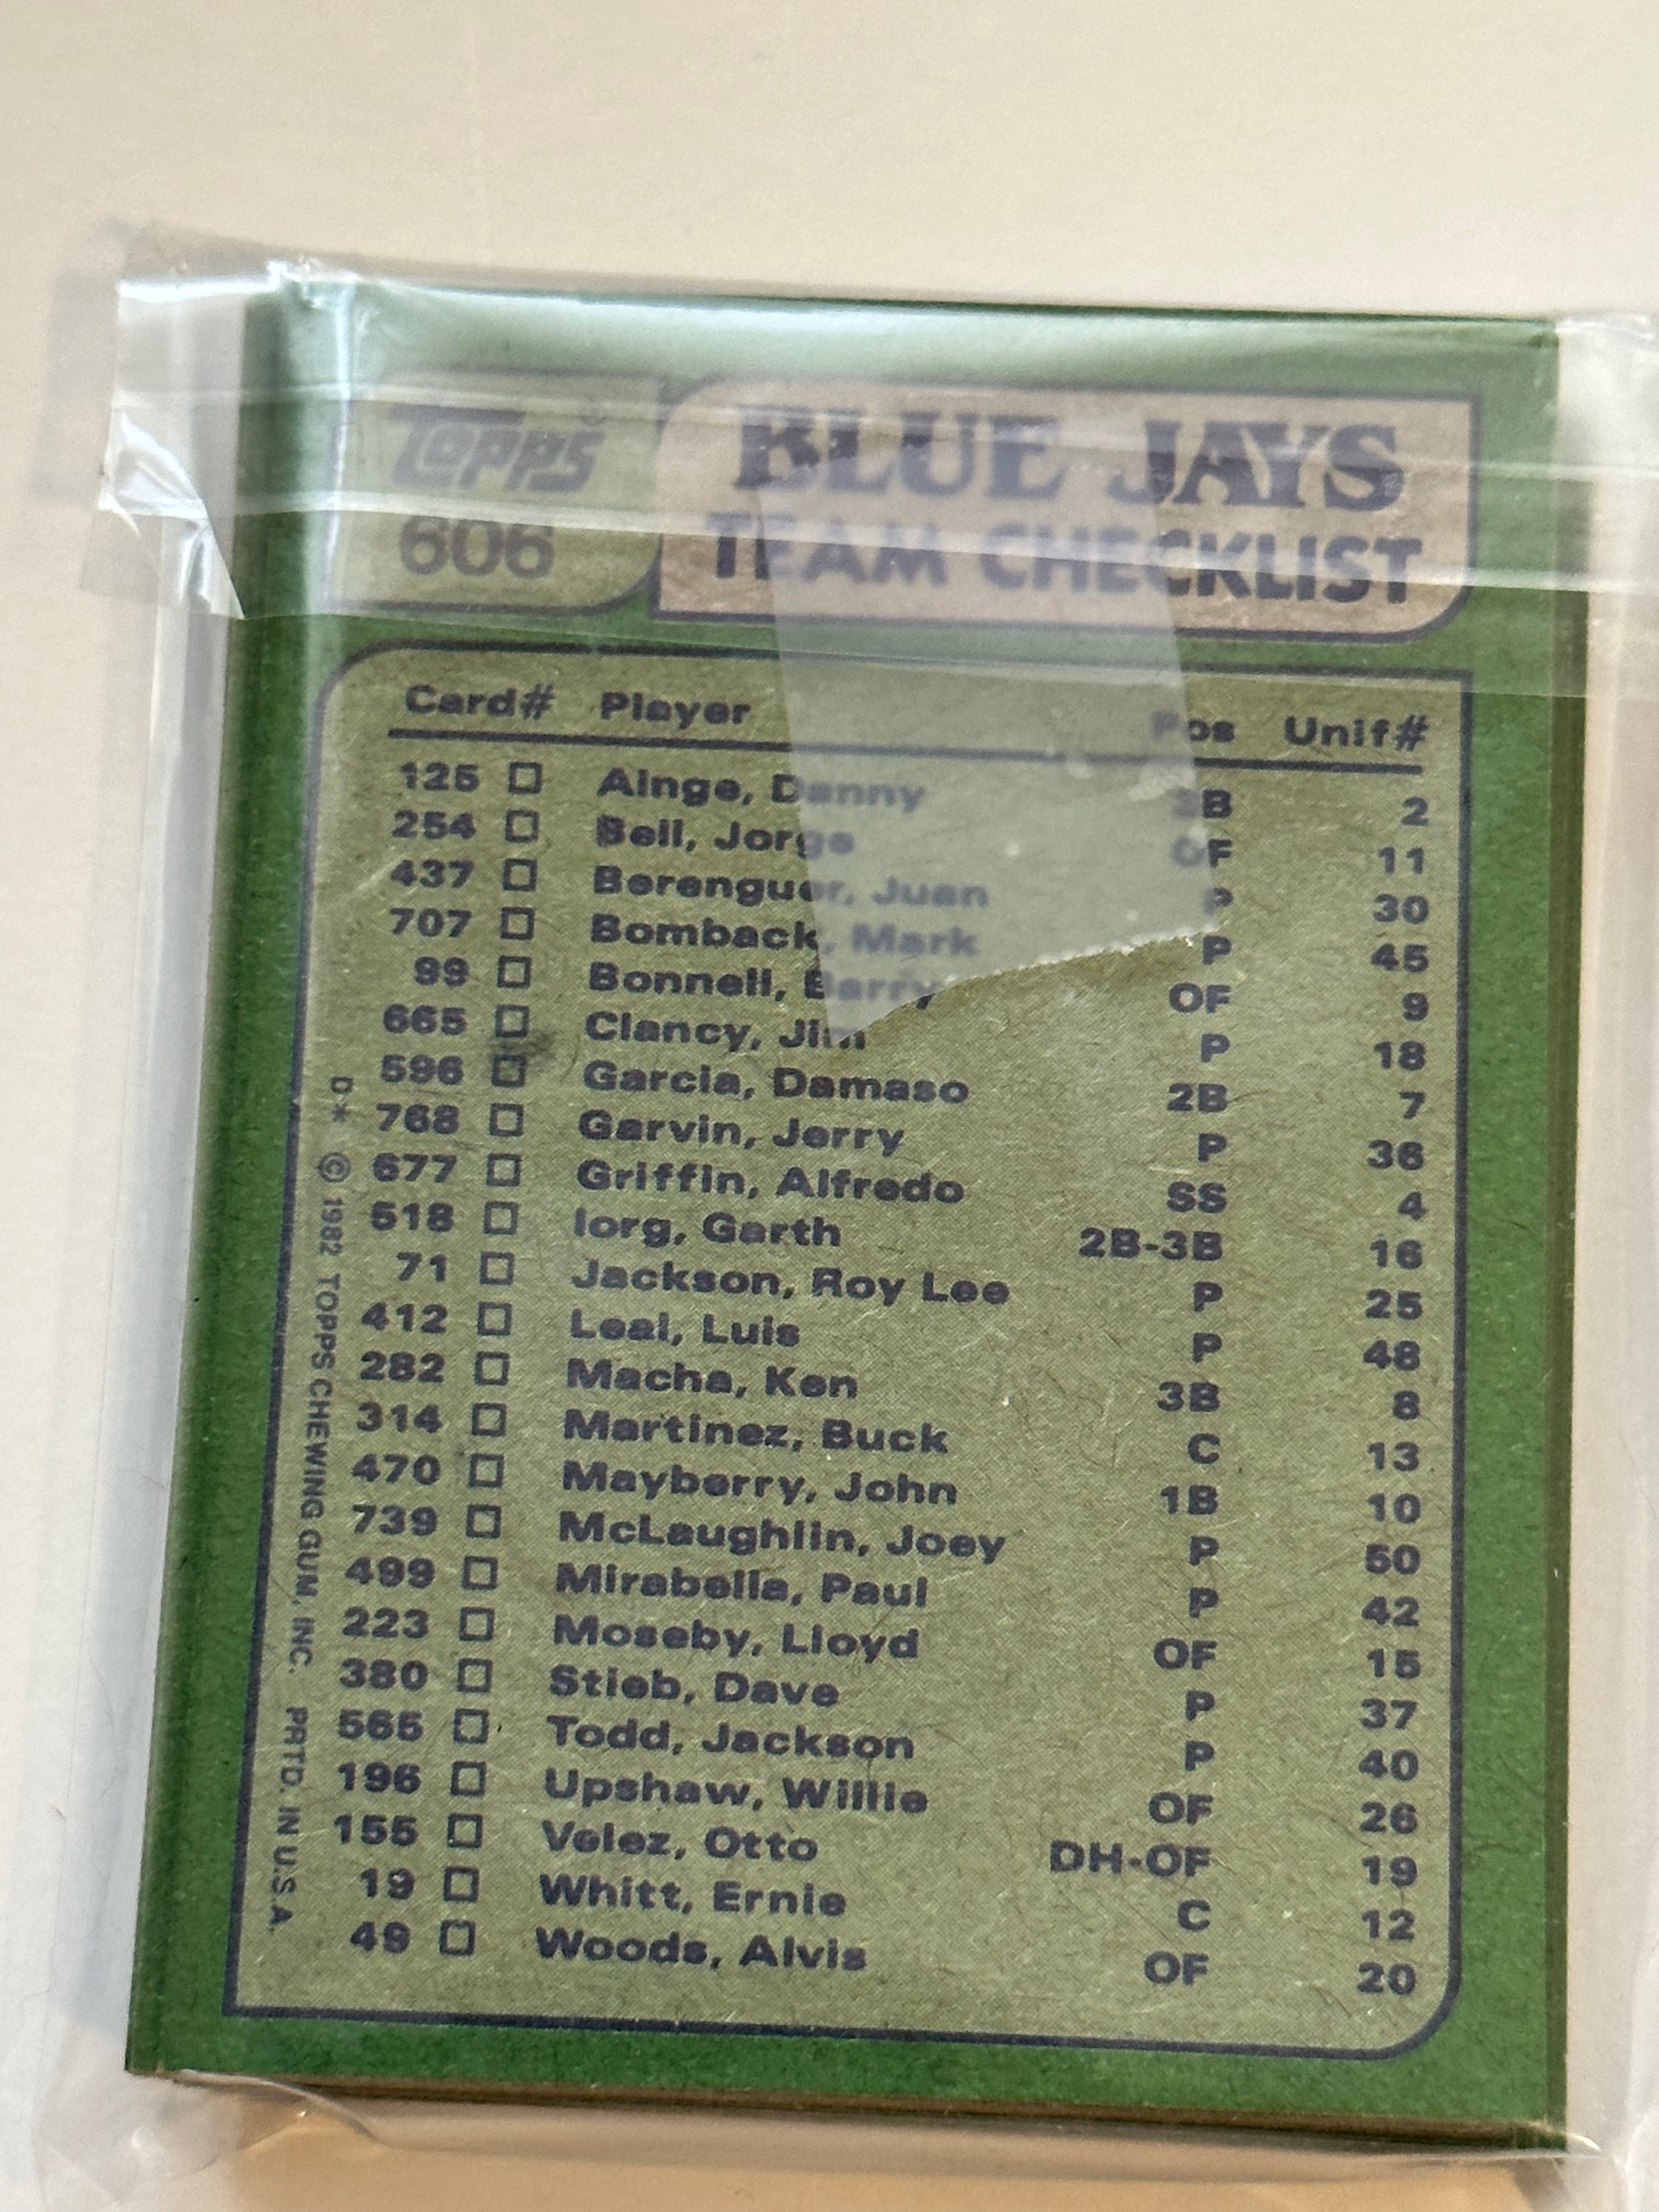 1982 Topps Blue Jays baseball team set